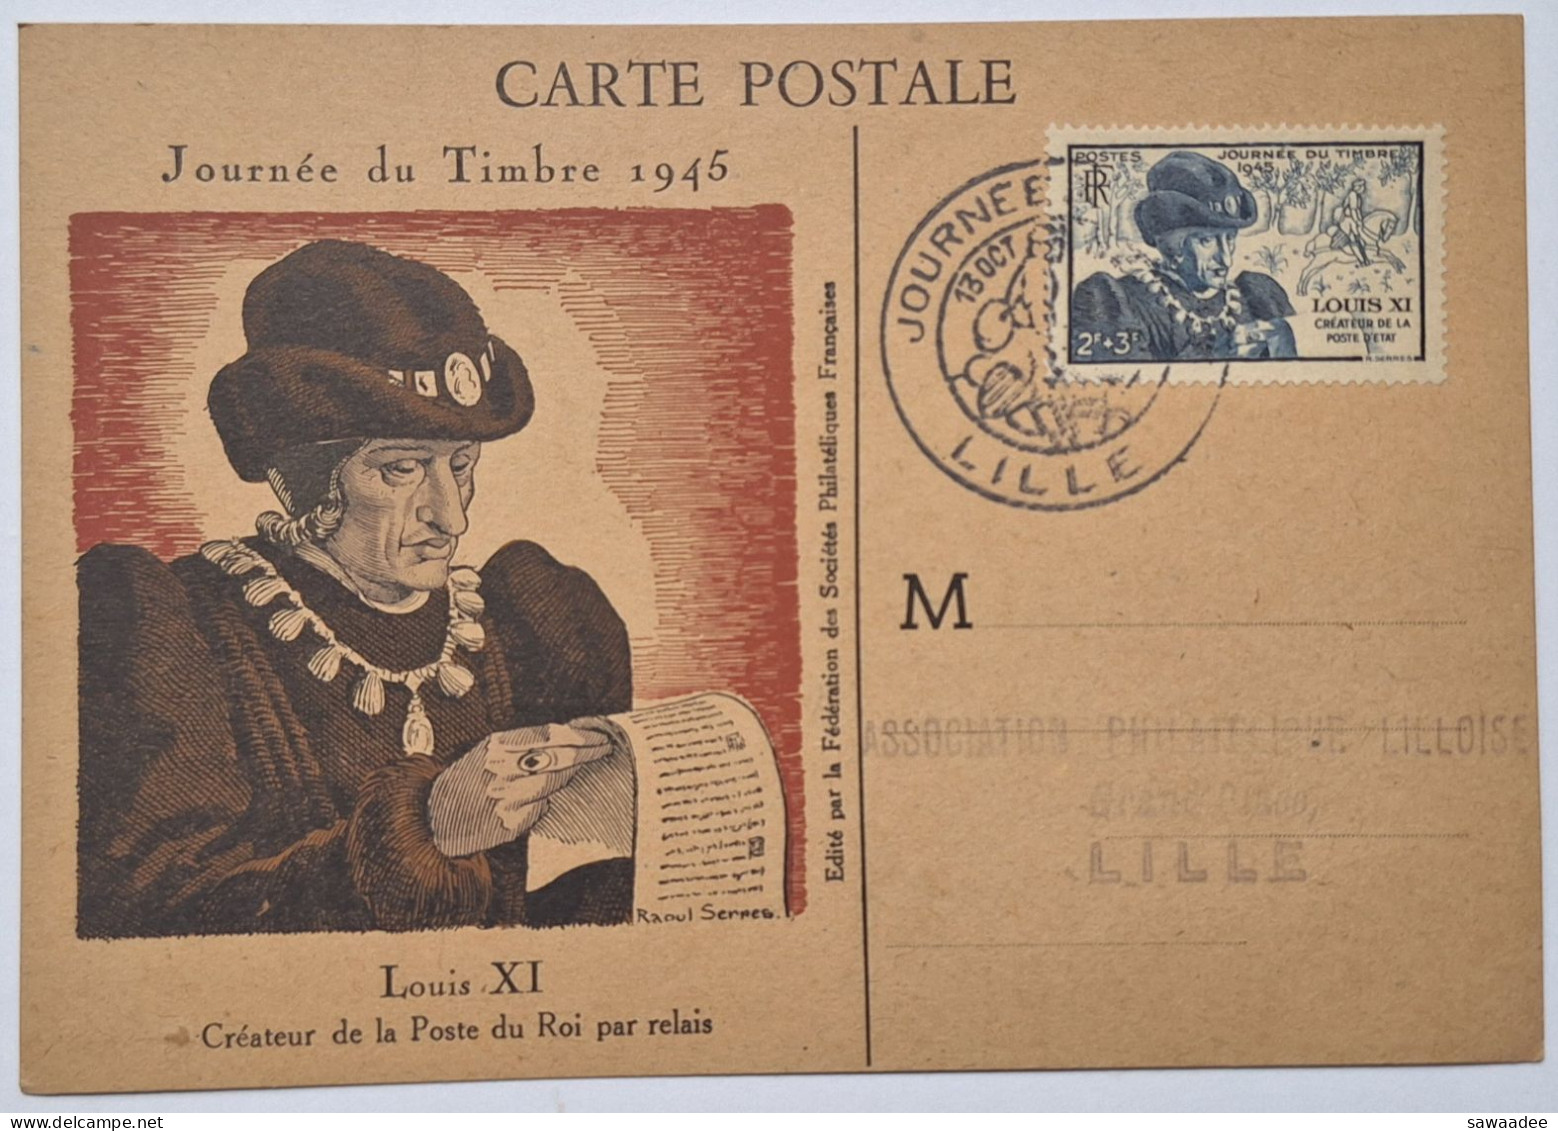 CARTE POSTALE FRANCE - JOURNEE DU TIMBRE 1946 LILLE - LOUIS XI CREATEUR DE LA POSTE DU ROI PAR RELAIS - Poste & Postini